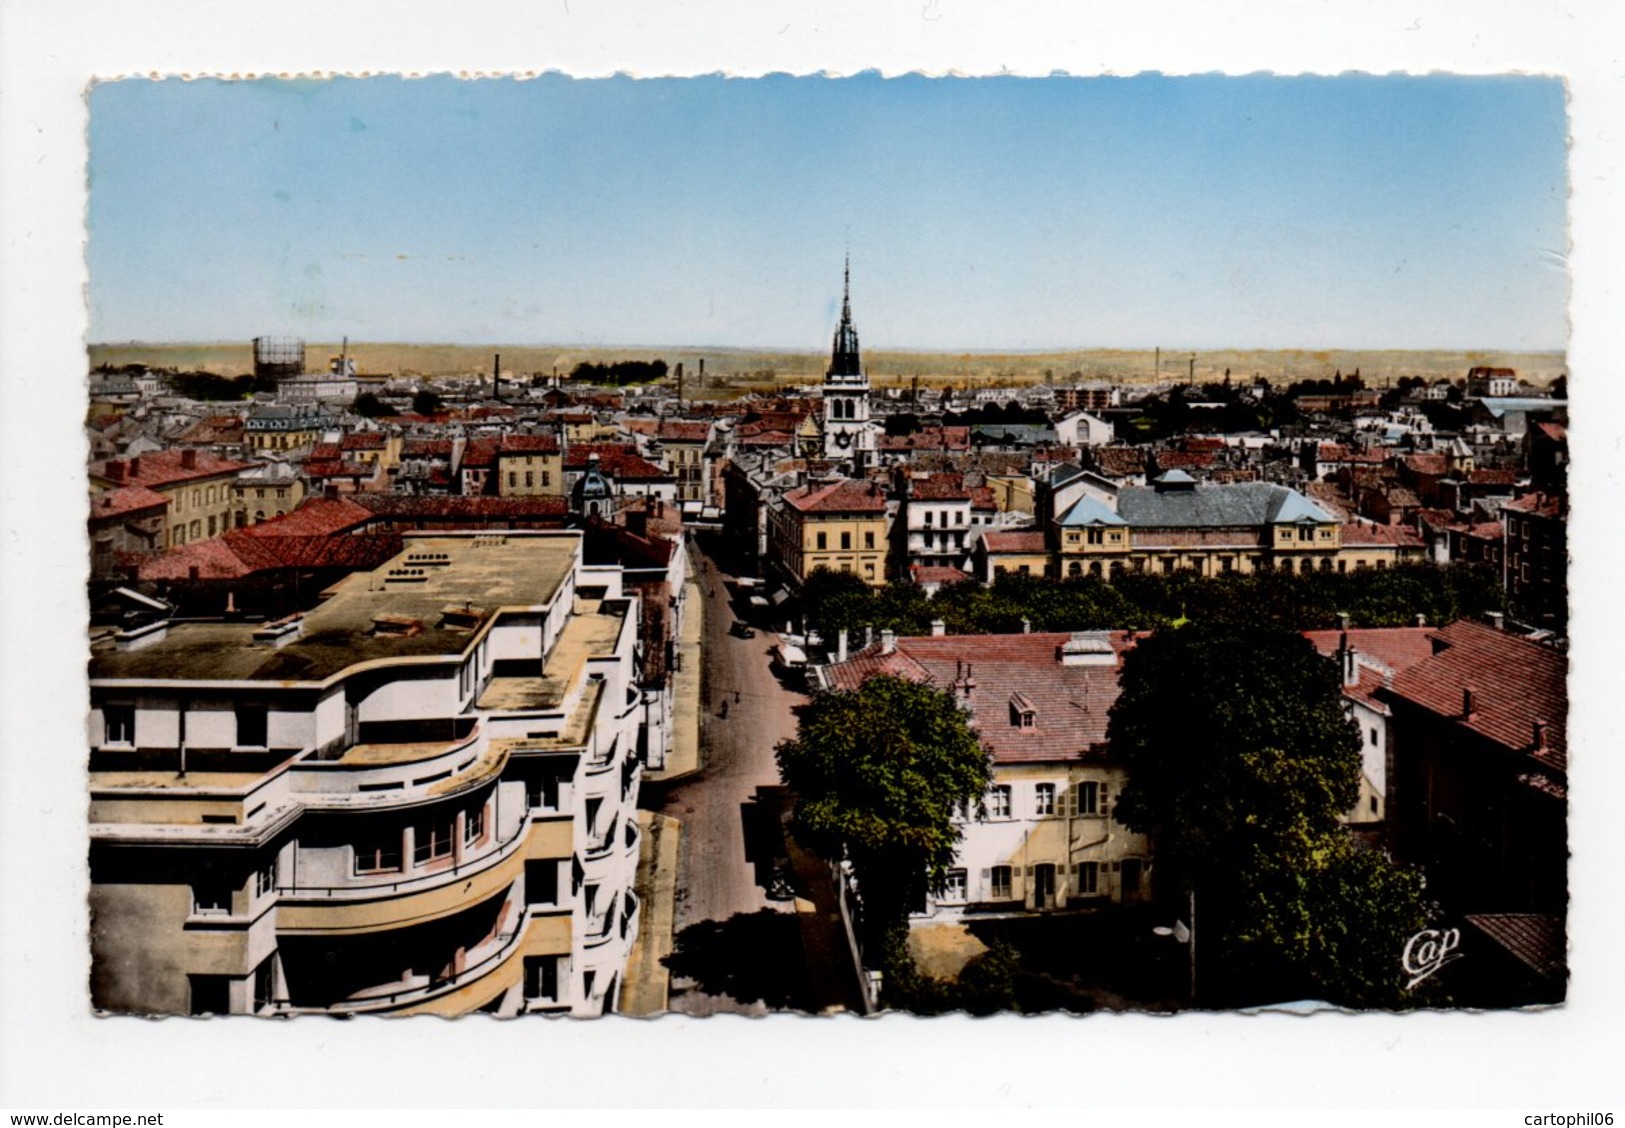 - CPSM VILLEFRANCHE-SUR-SAONE (69) - Panorama De La Ville 1955 - Photo CAP N° 40 - - Villefranche-sur-Saone